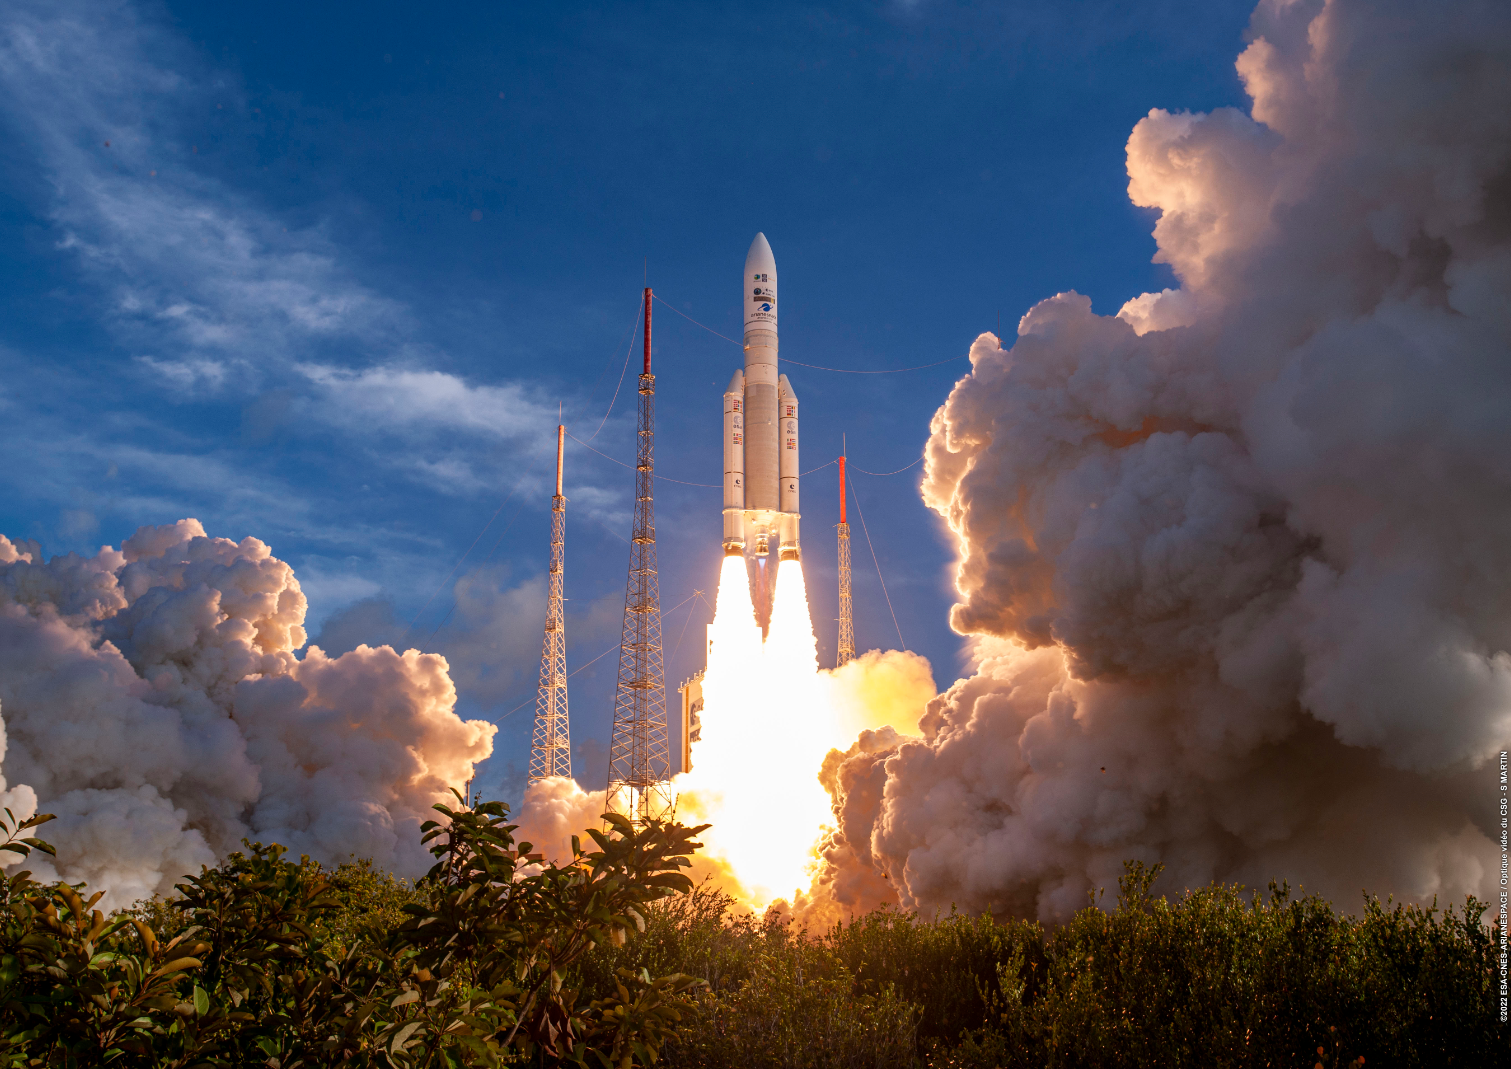 MTG-I1 lifts off onboard a Ariane 5 Rocket (ESA, 2022)